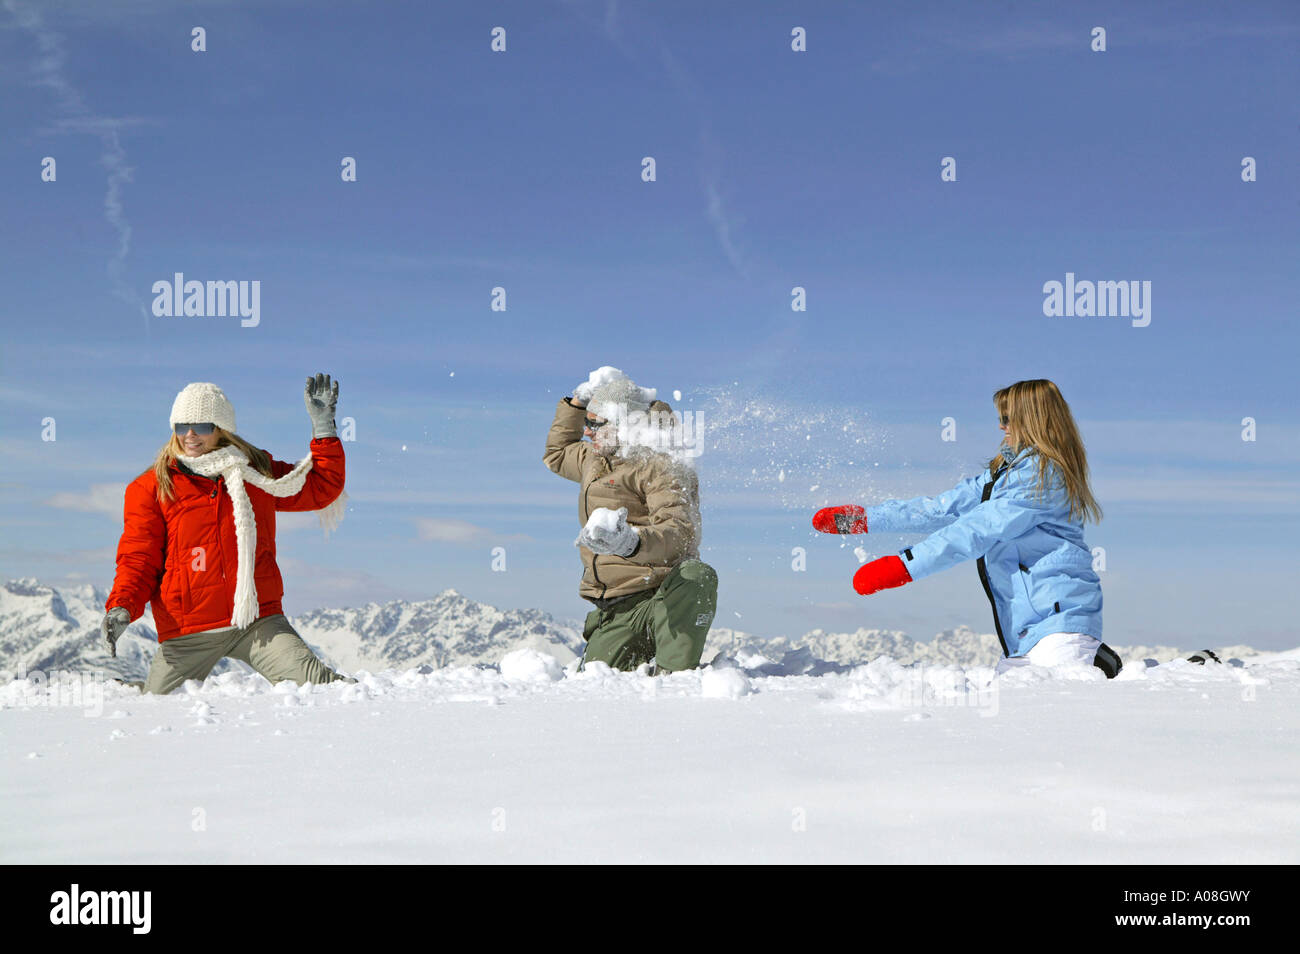 Junges Leute haben Spass bei einer Schneeballschlacht, young people having snowball fight fun Stock Photo